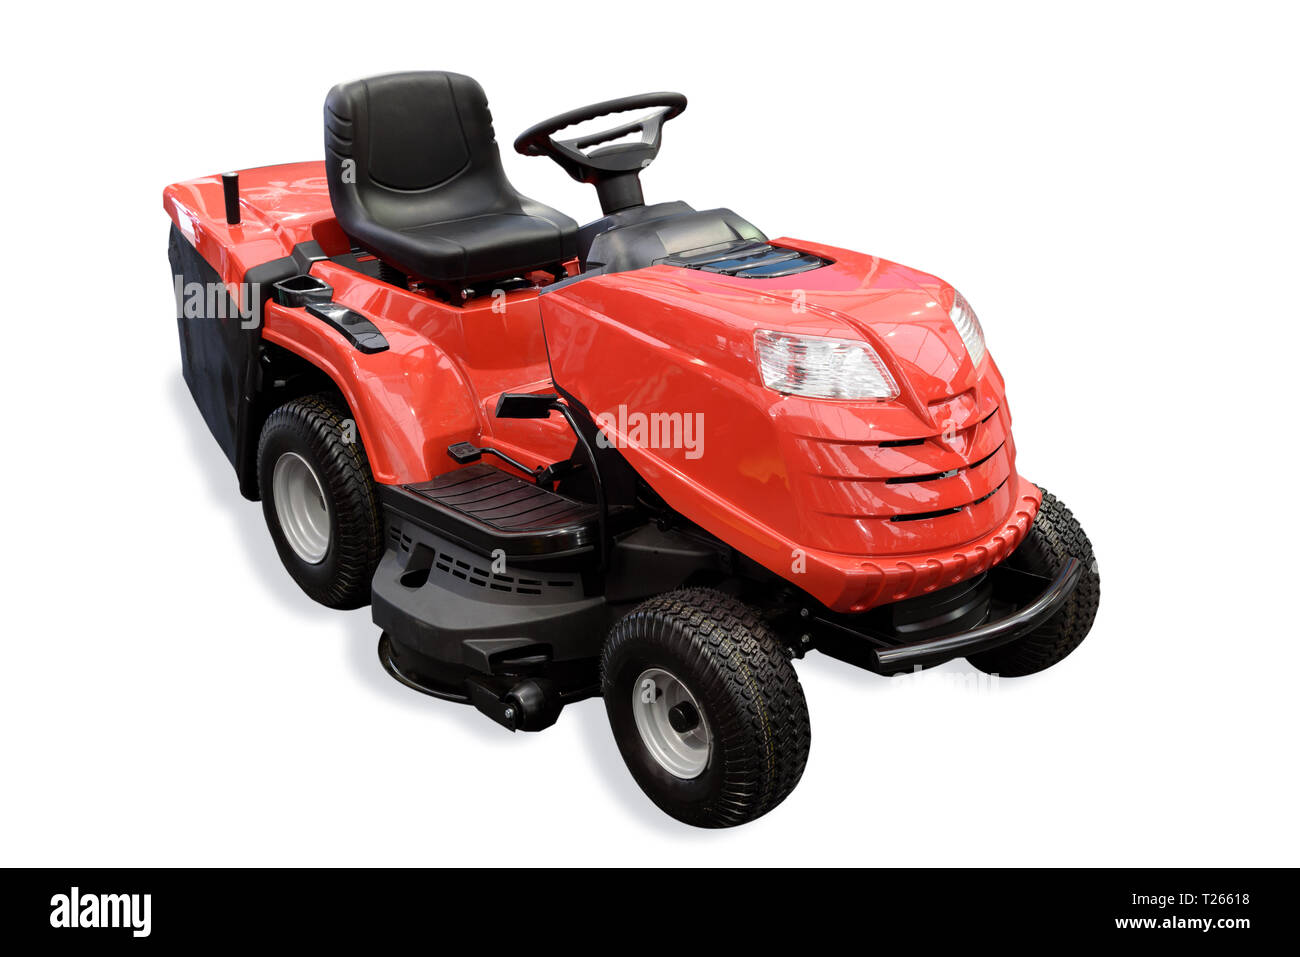 Gartengeräte - generische roten Traktor Mäher auf einem weißen Hintergrund. Stockfoto